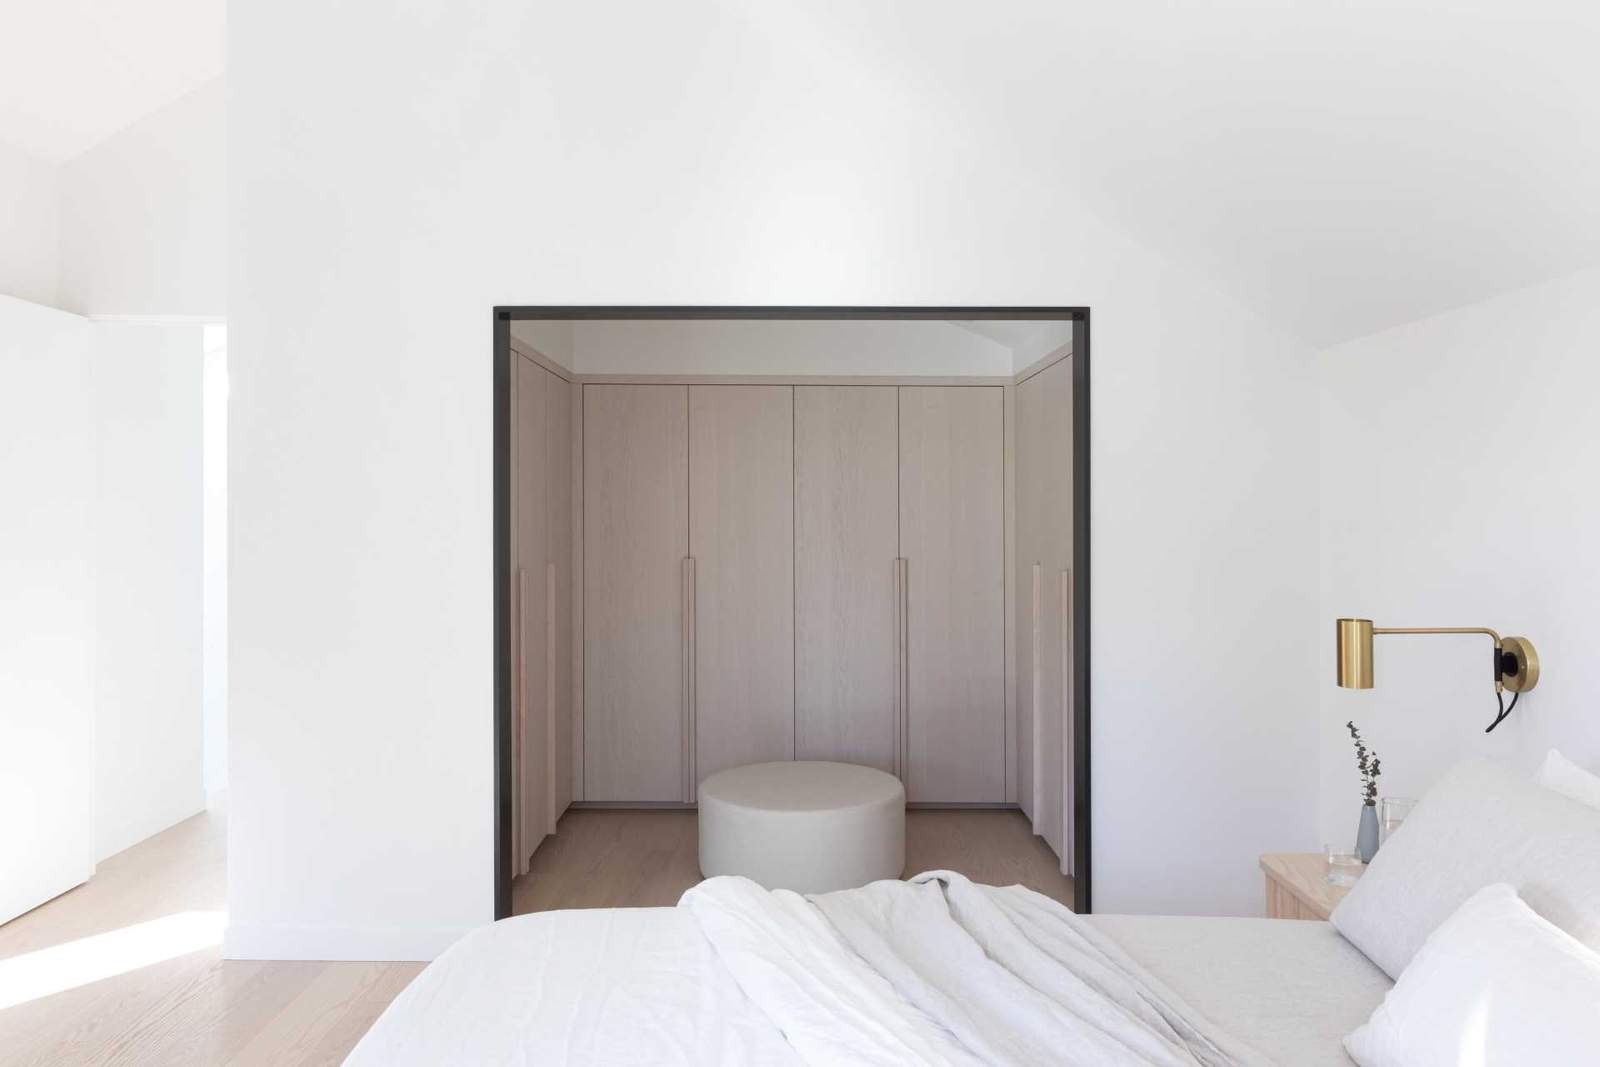 غرفة نوم حديثة بها خزانة ملابس مفتوحة مع خزائن خشبية فاتحة اللون.